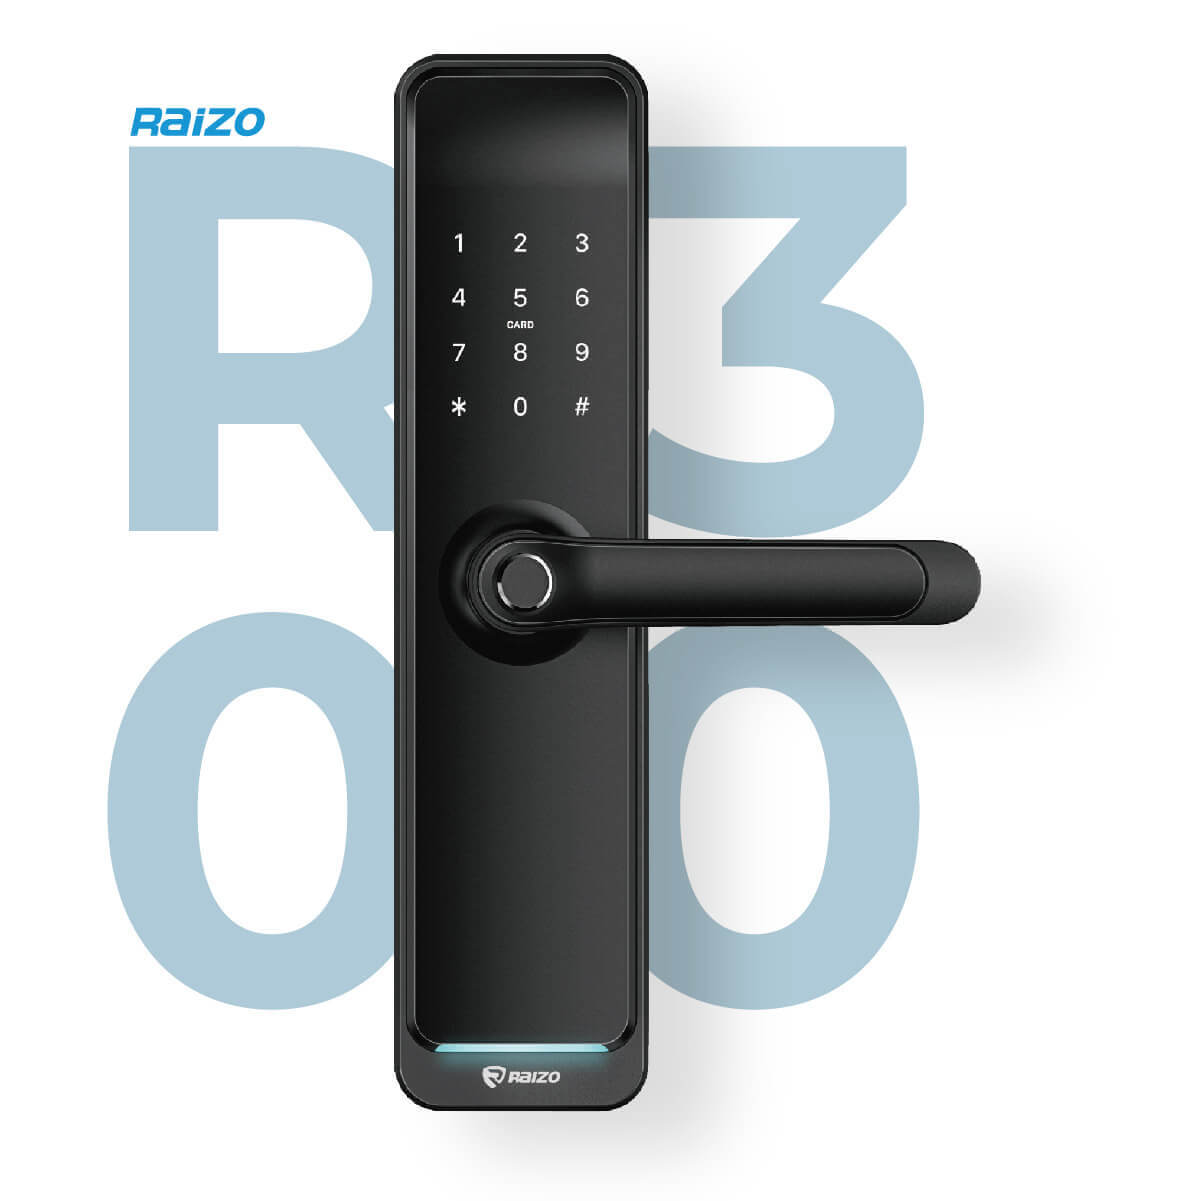 Raizo R300 smart lock Singapore